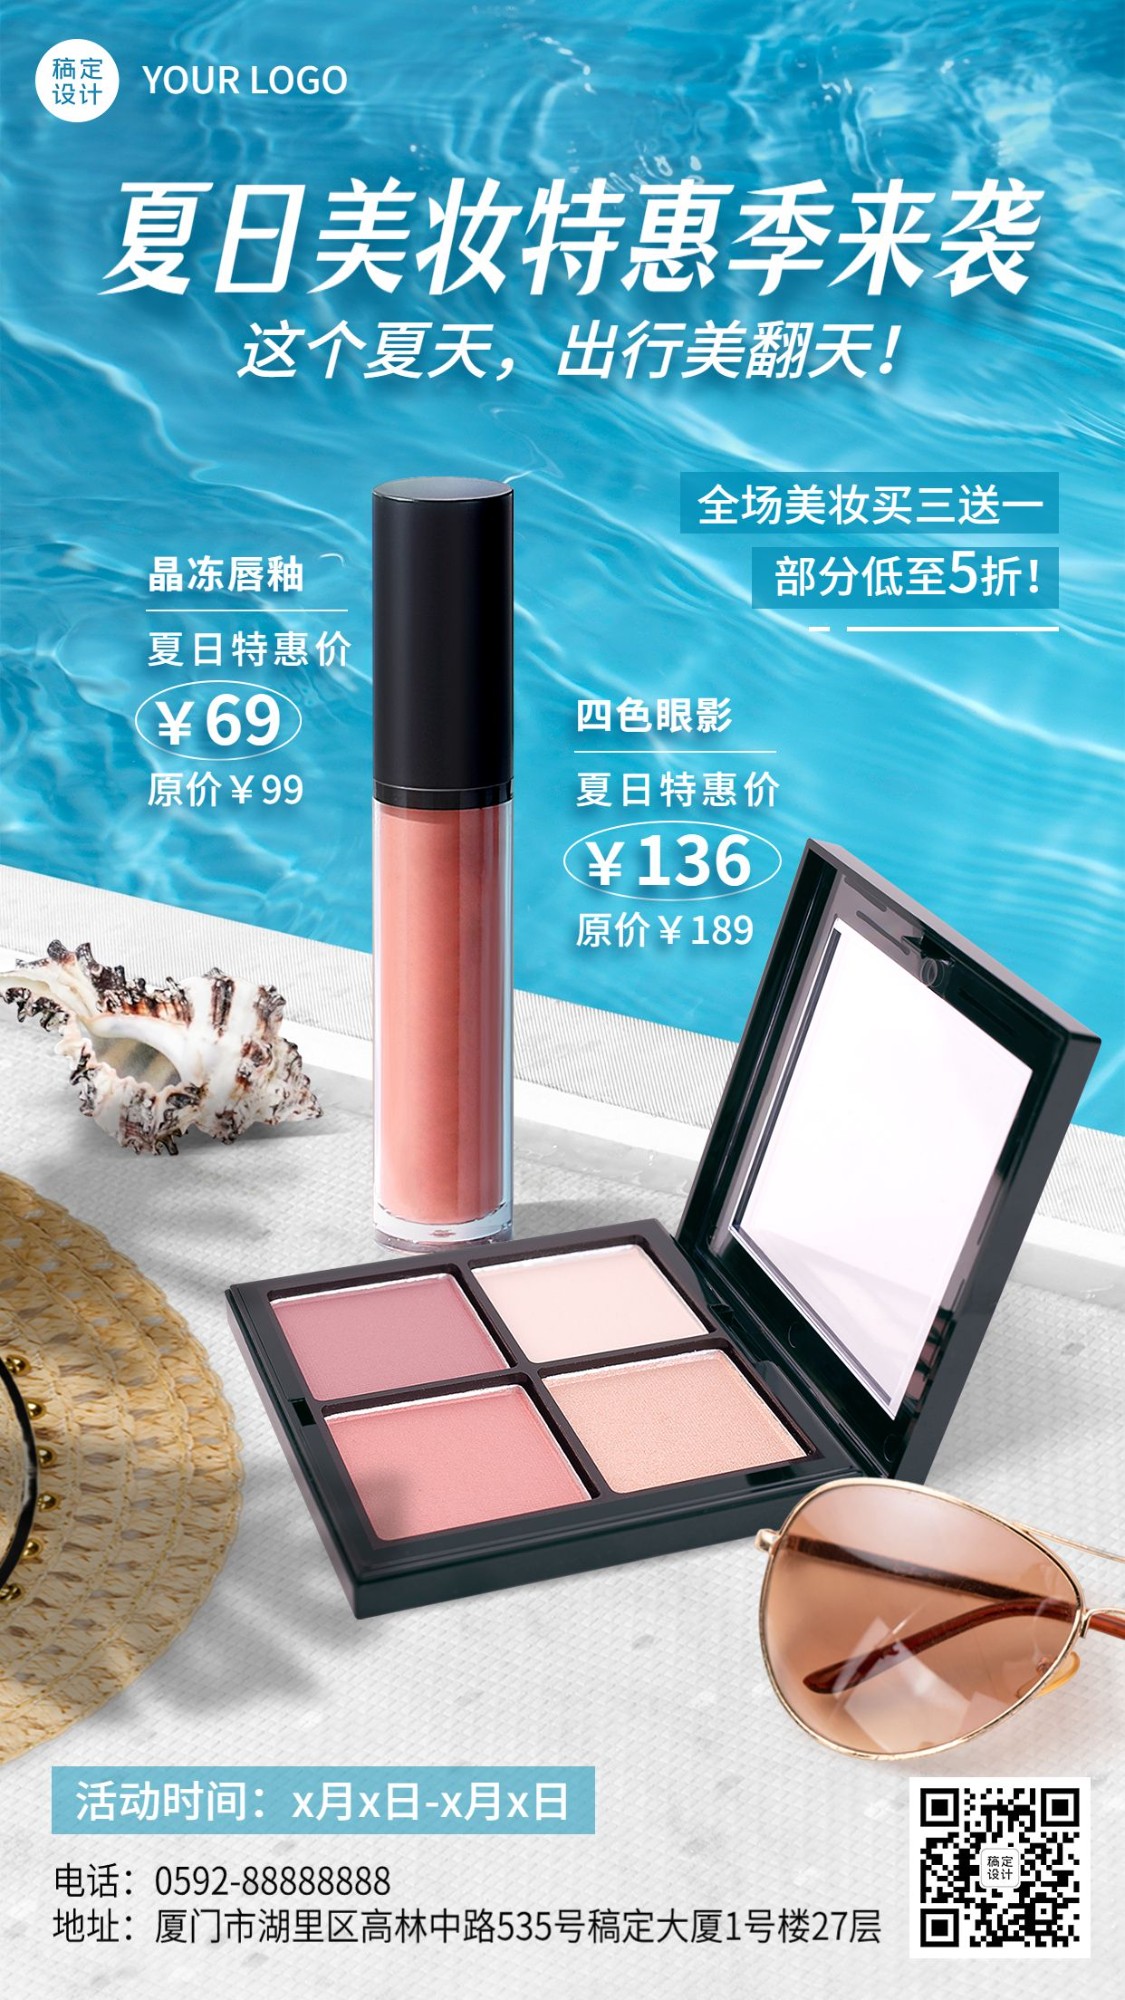 电商夏季促销美容美妆化妆品产品展示节点营销手机海报